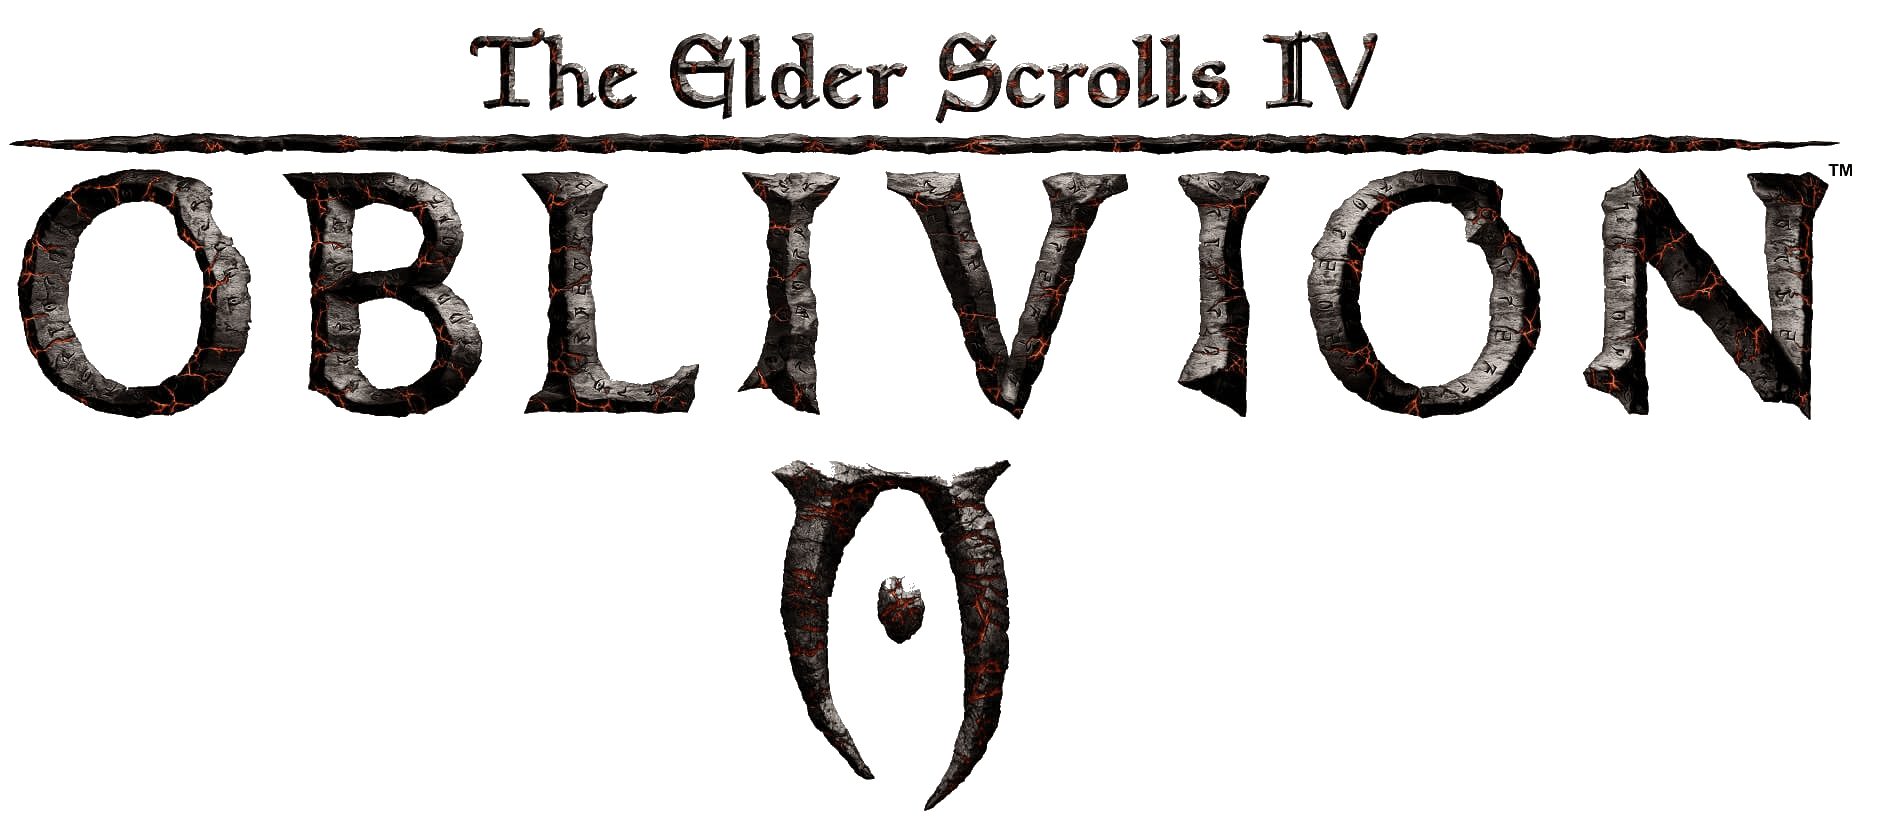 The Elder Scrolls PNG Image